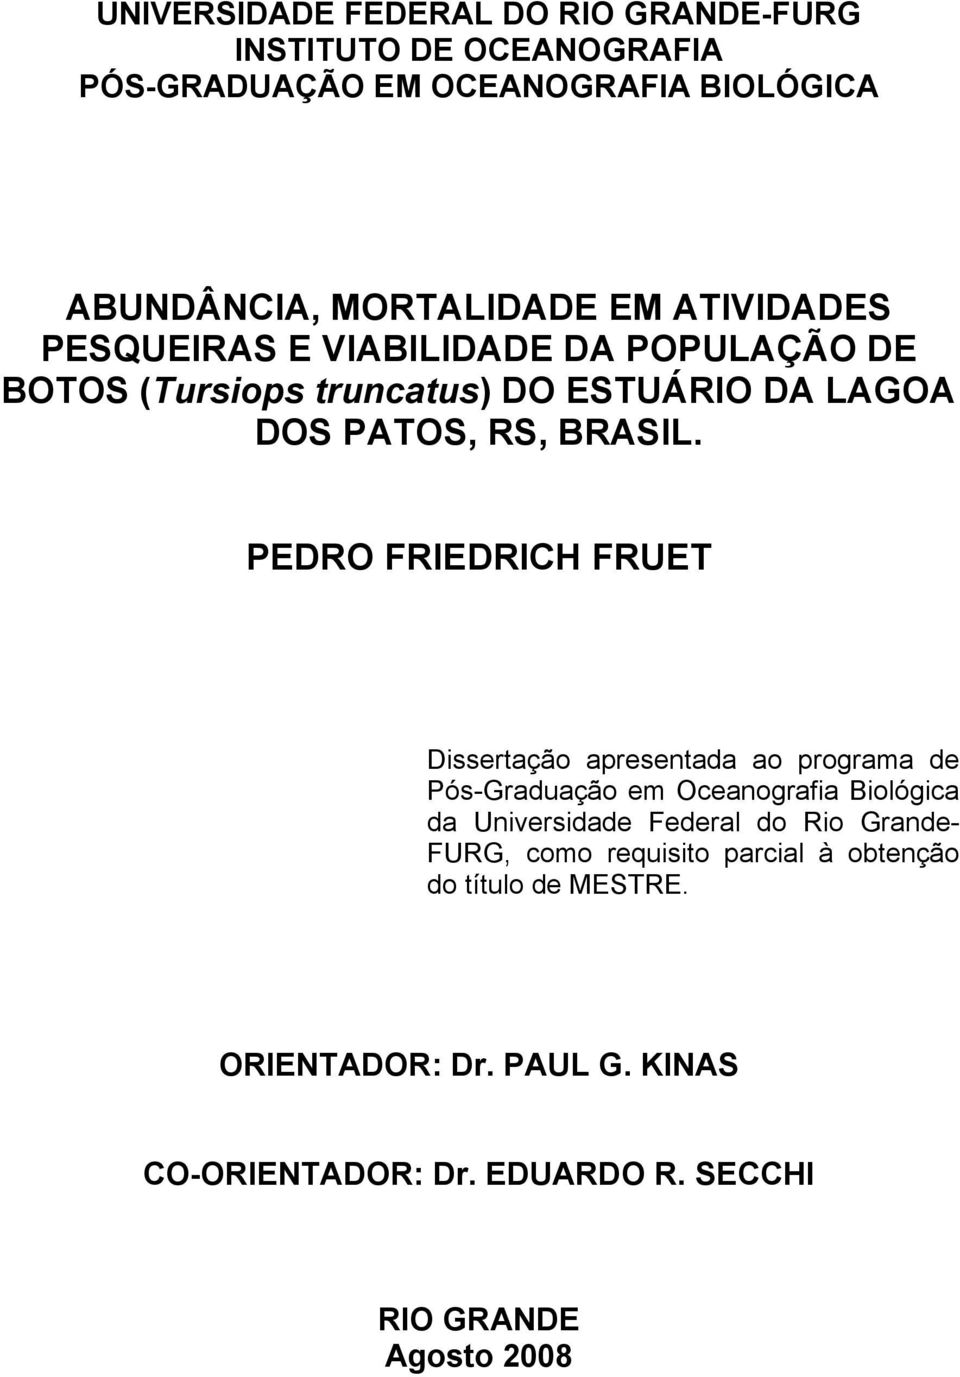 PEDRO FRIEDRICH FRUET Dissertação apresentada ao programa de Pós-Graduação em Oceanografia Biológica da Universidade Federal do Rio